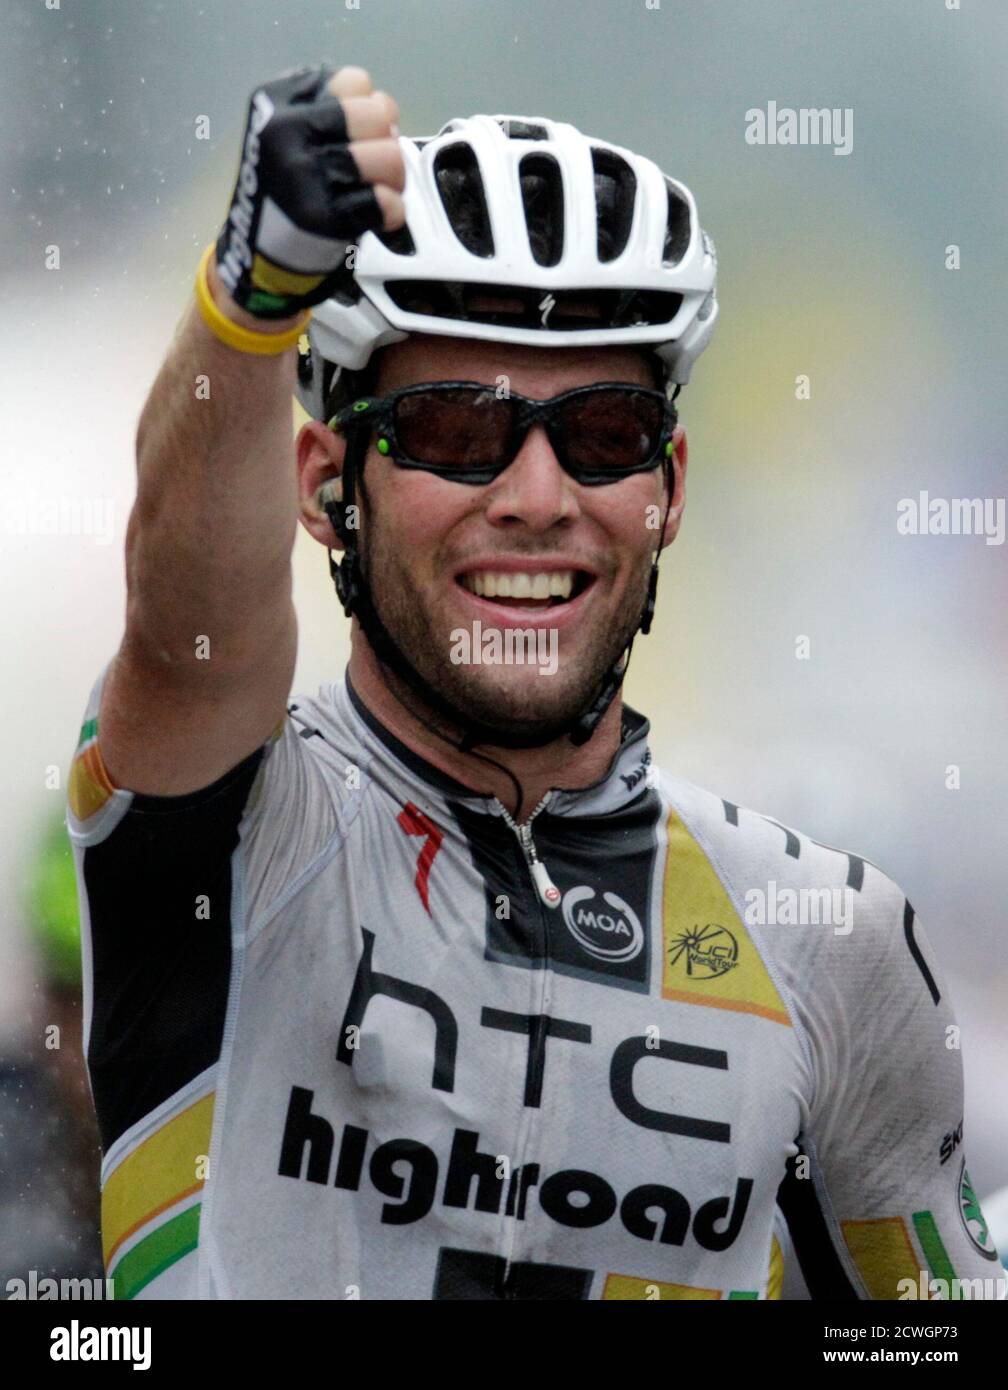 Il pilota di HTC-Highroad Mark Cavendish di Gran Bretagna (C) celebra la vittoria della 11° tappa della corsa ciclistica Tour de France 2011 da Blaye-les-Mines a Lavaur il 13 luglio 2011. REUTERS/Denis Balibouse (FRANCIA - Tags: CICLISMO SPORTIVO) Foto Stock